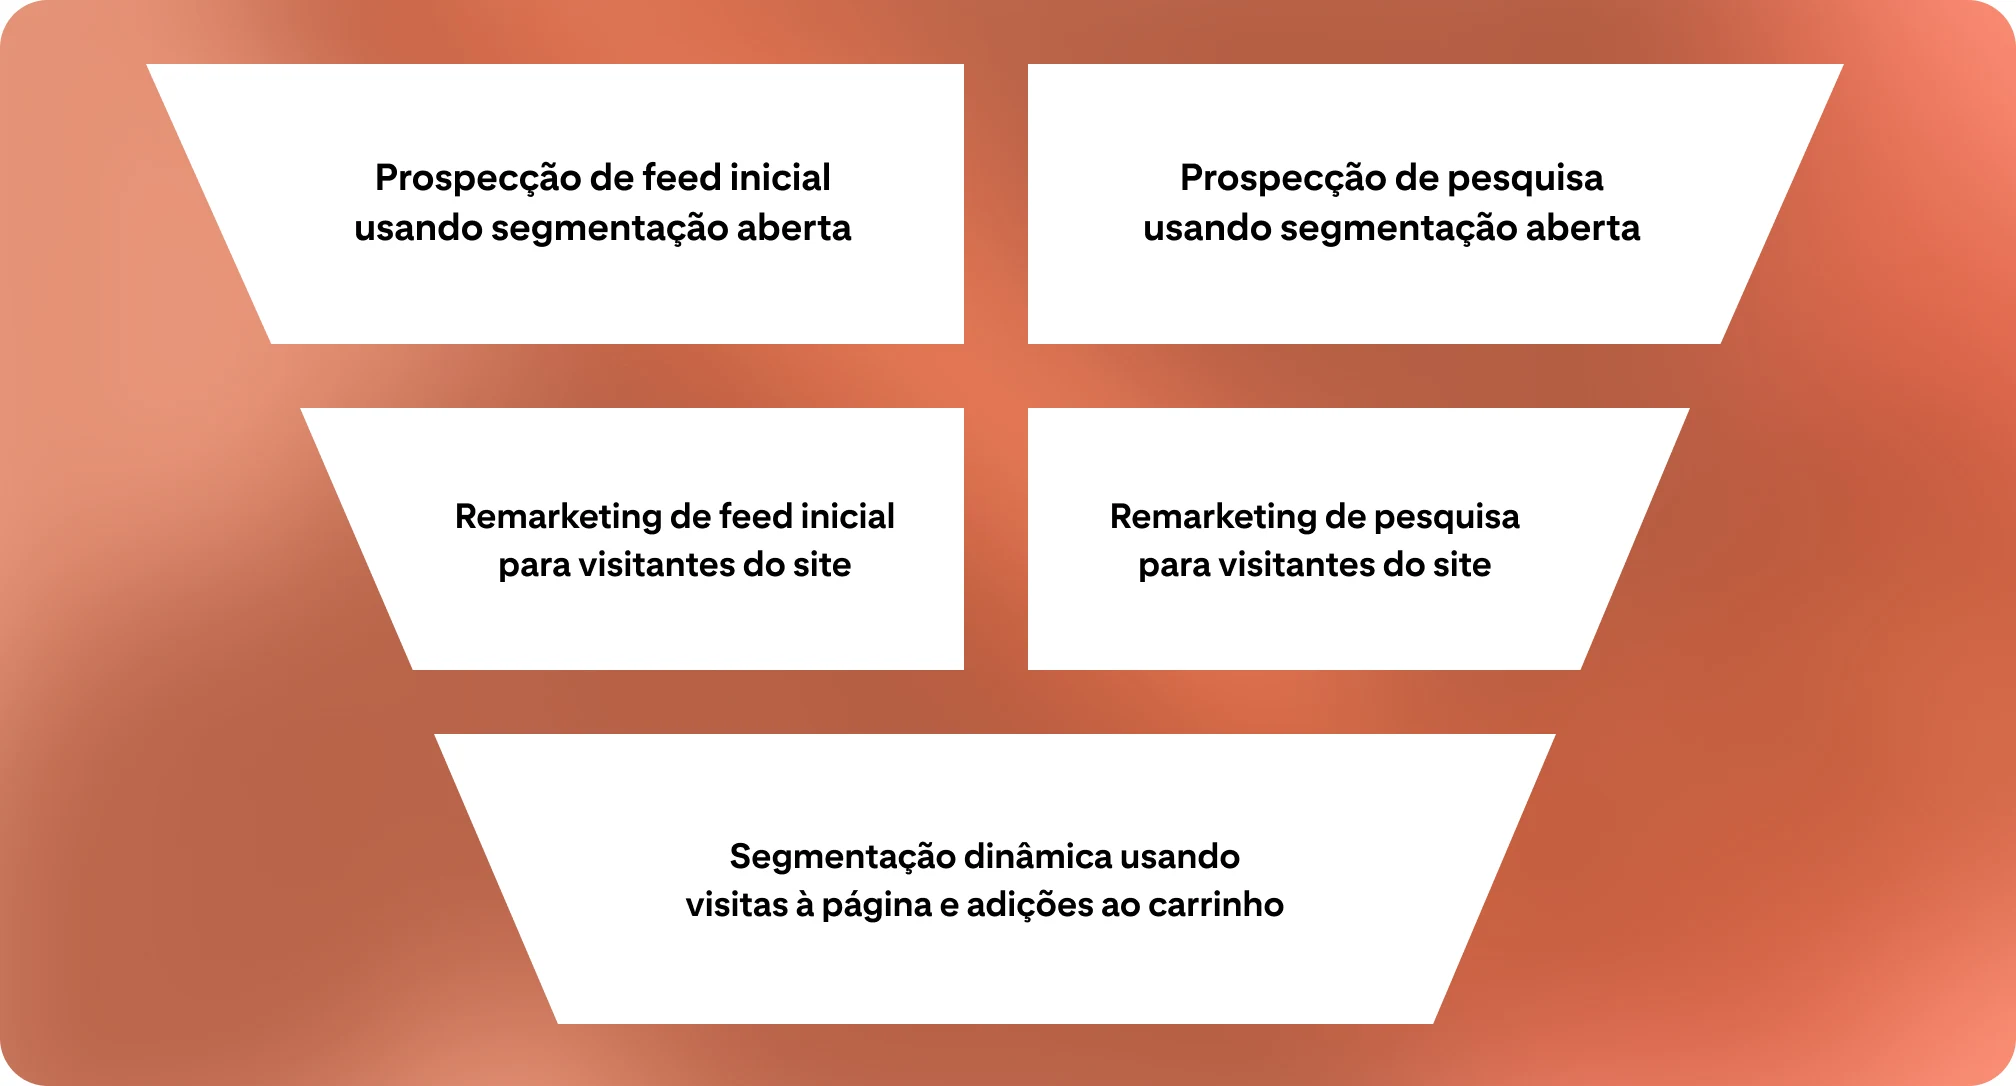 Sobre um fundo laranja, há um funil de vendas dividido em cinco partes, cada uma representando uma campanha publicitária diferente.